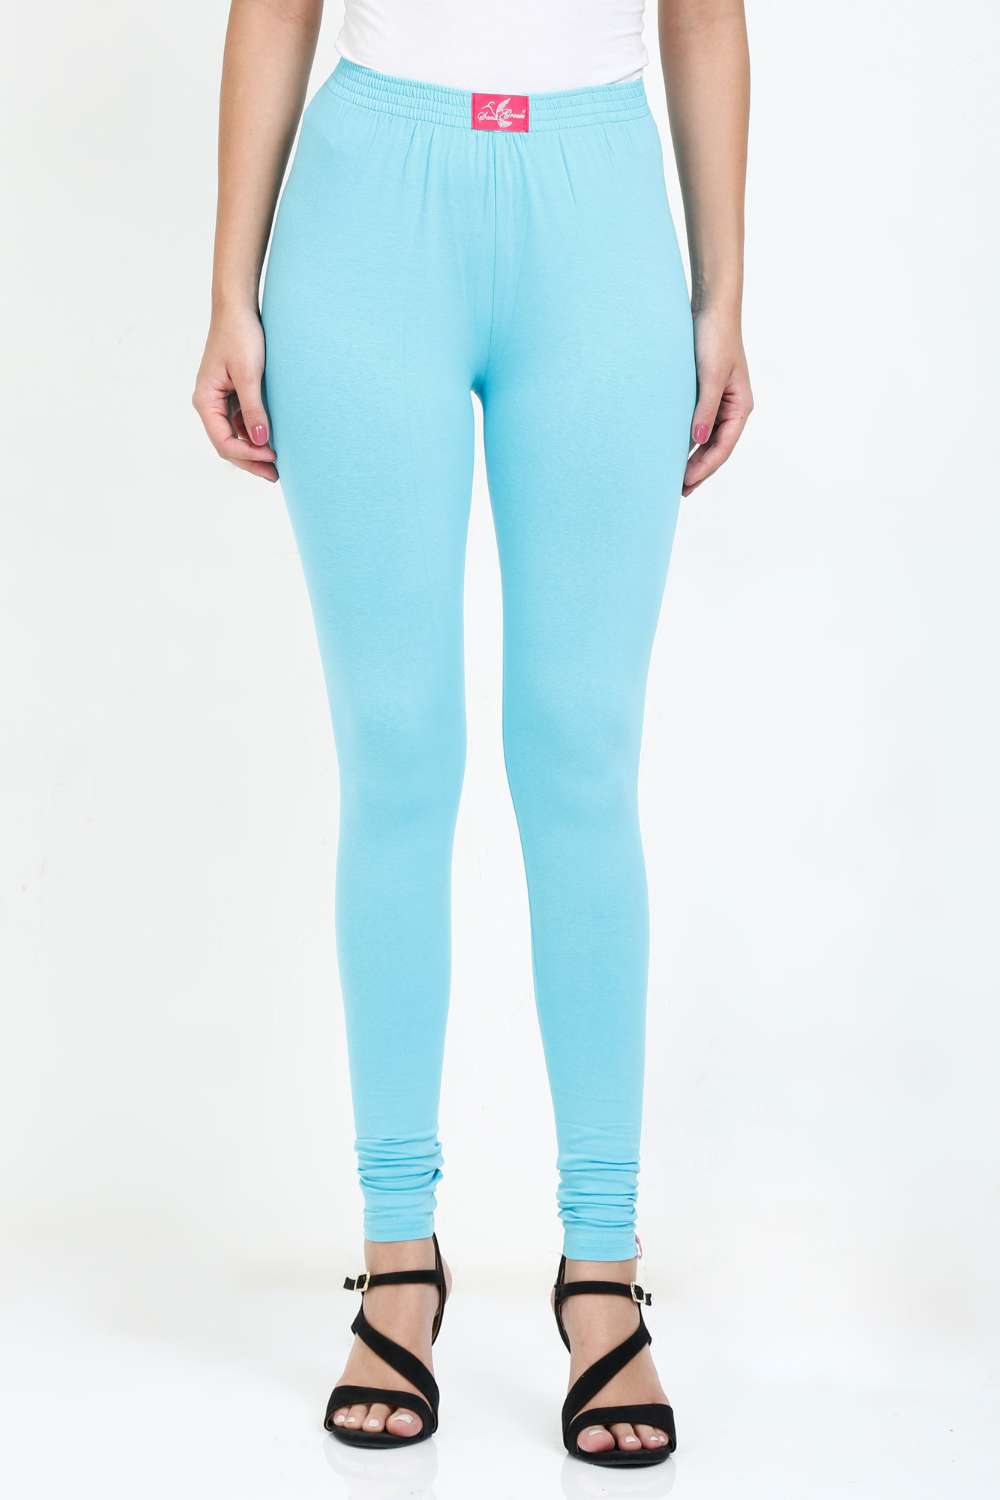 Women's Cotton Lycra Light Blue Full length legging – Sand Grouse